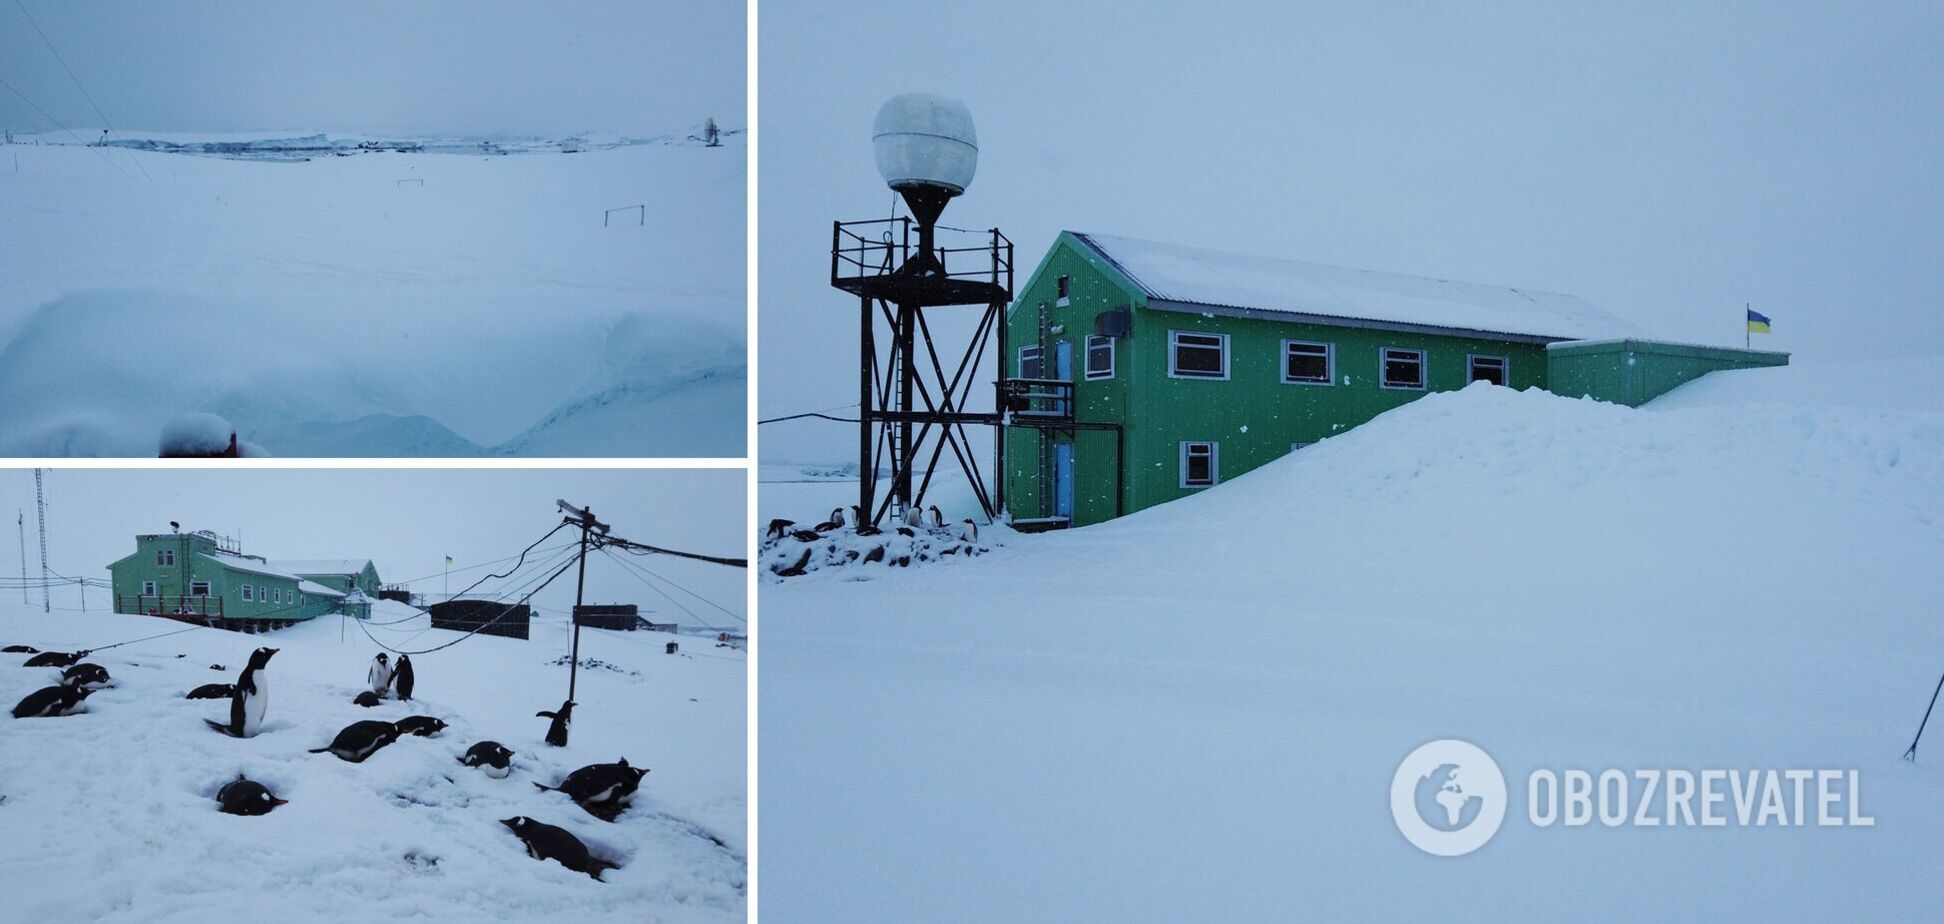 'К празднику Николая': на станции 'Академик Вернадский' зафиксировали рекордный уровень снега. Фото